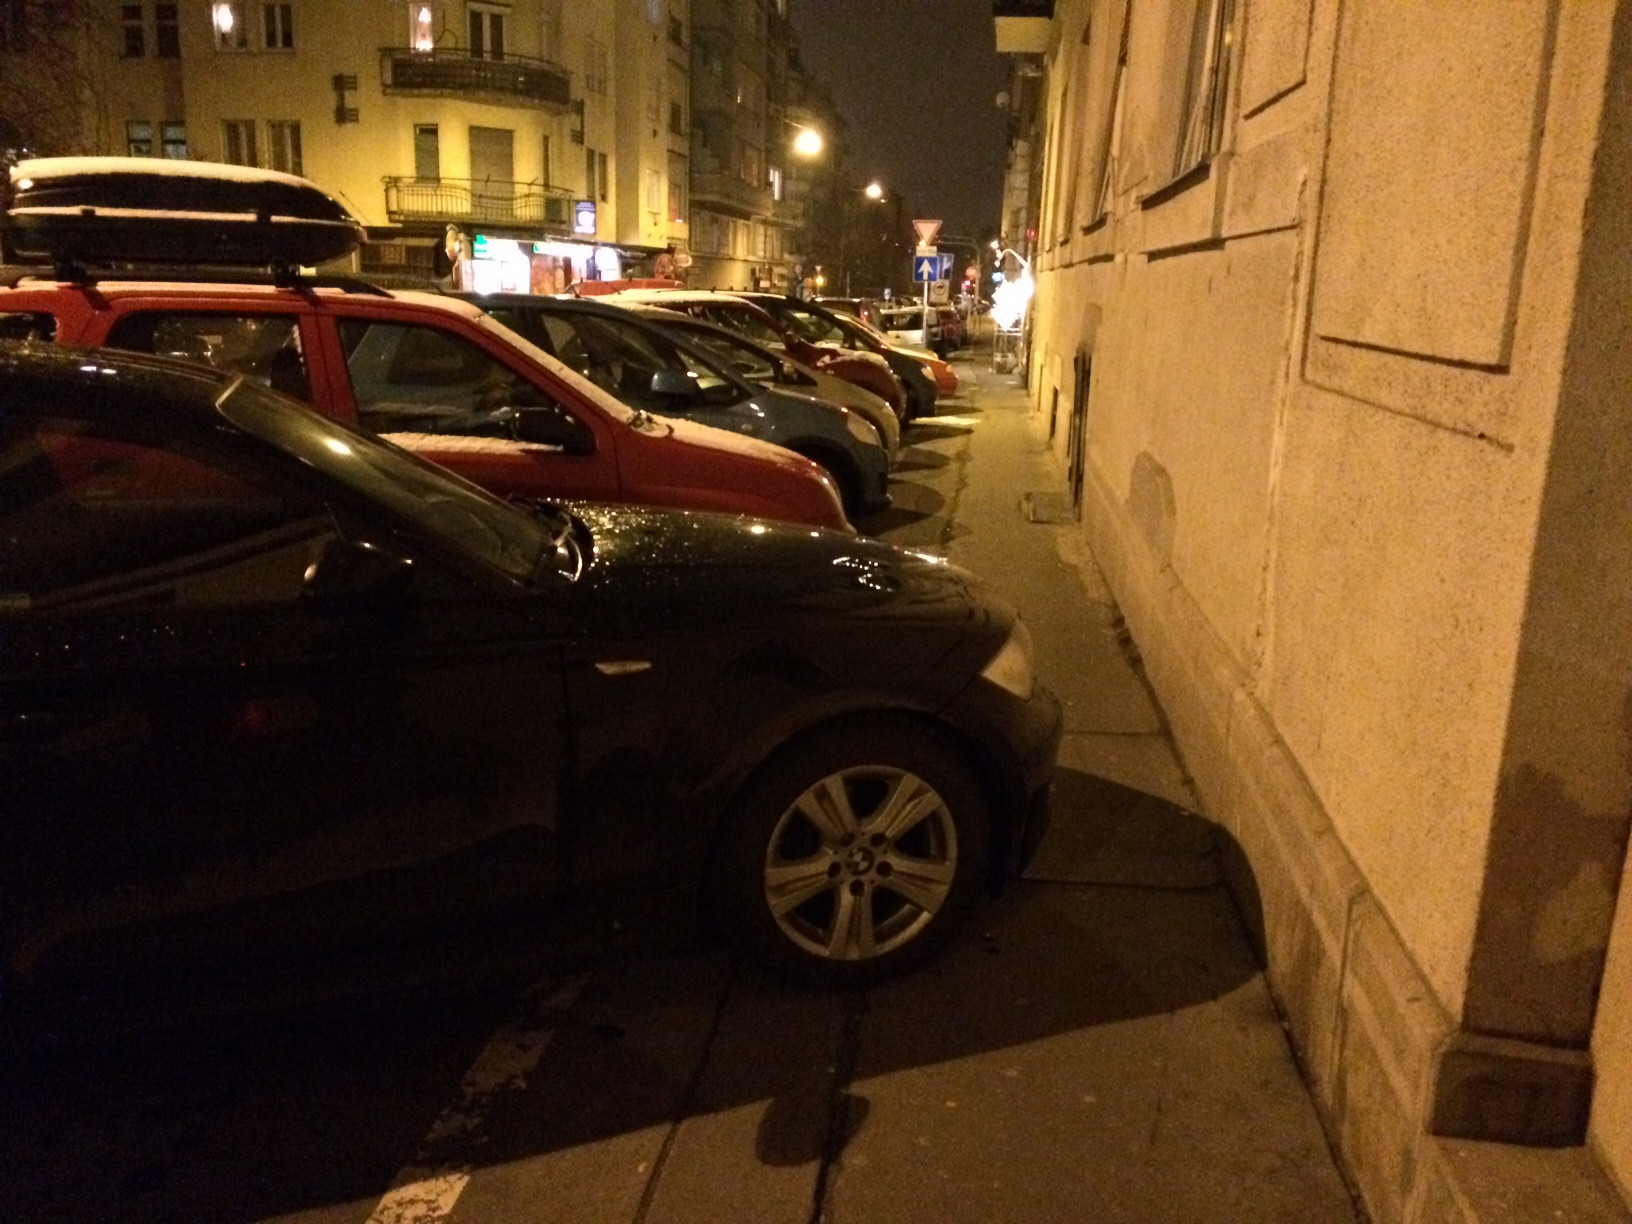 Áron a XI. kerületi Fadrusz utcában kialakult parkolási helyzetről tett bejelentést a Járókelőre. Szerinte érdemes lenne indítani egy kampányt az utca életét ellehetetlenítő parkoló autókról.<br /><br />https://jarokelo.hu/26611